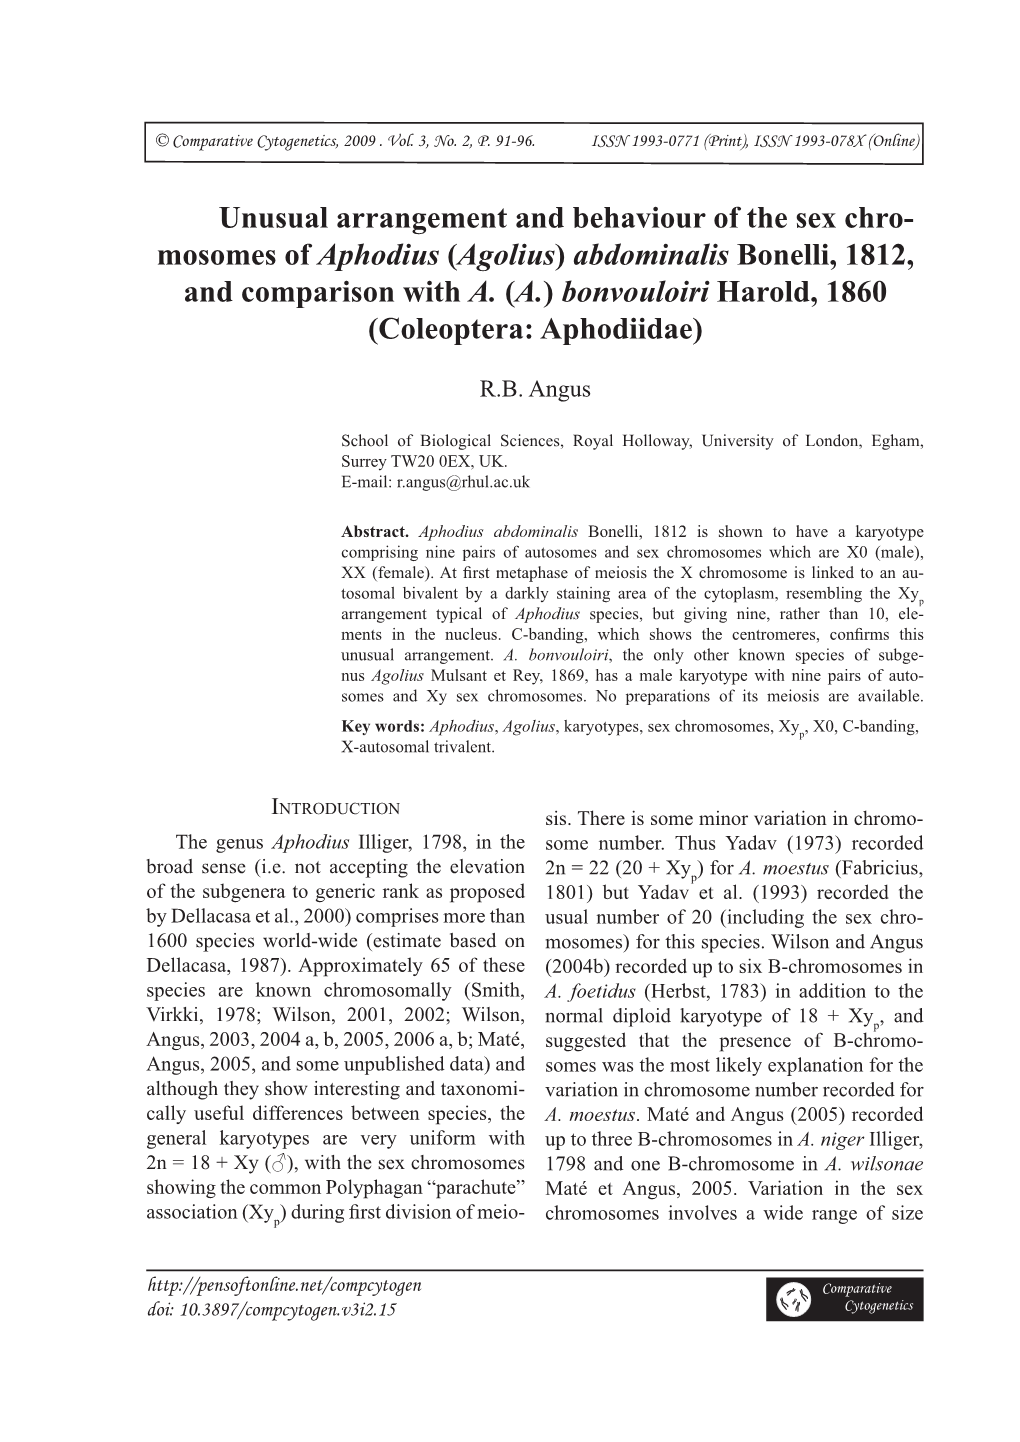 Unusual Arrangement and Behaviour of the Sex Chro- Mosomes of Aphodius (Agolius) Abdominalis Bonelli, 1812, and Comparison with A